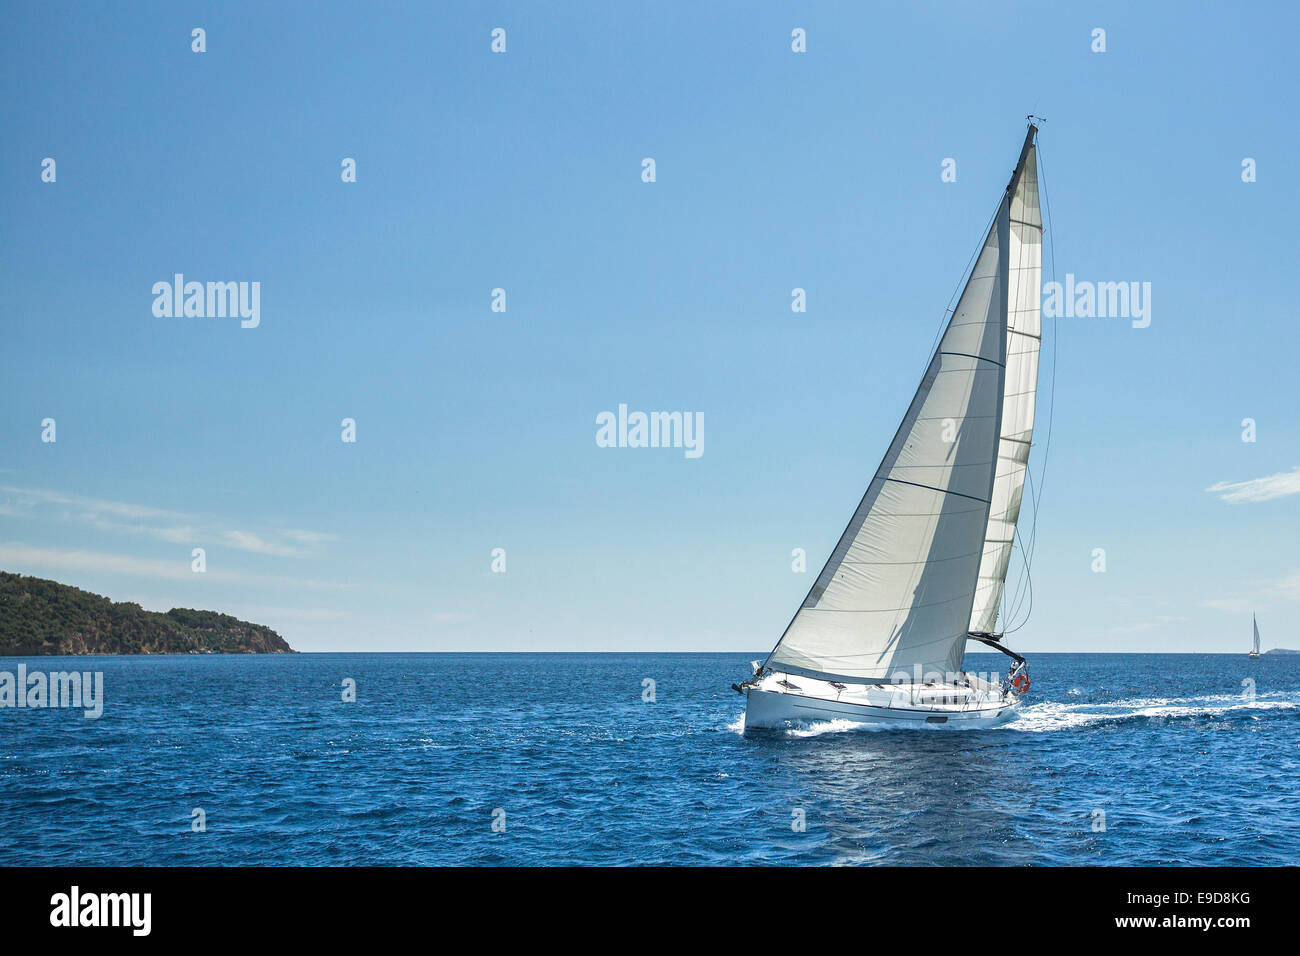 La voile au large de la Grèce dans la mer Egée. Yachts de luxe. Banque D'Images